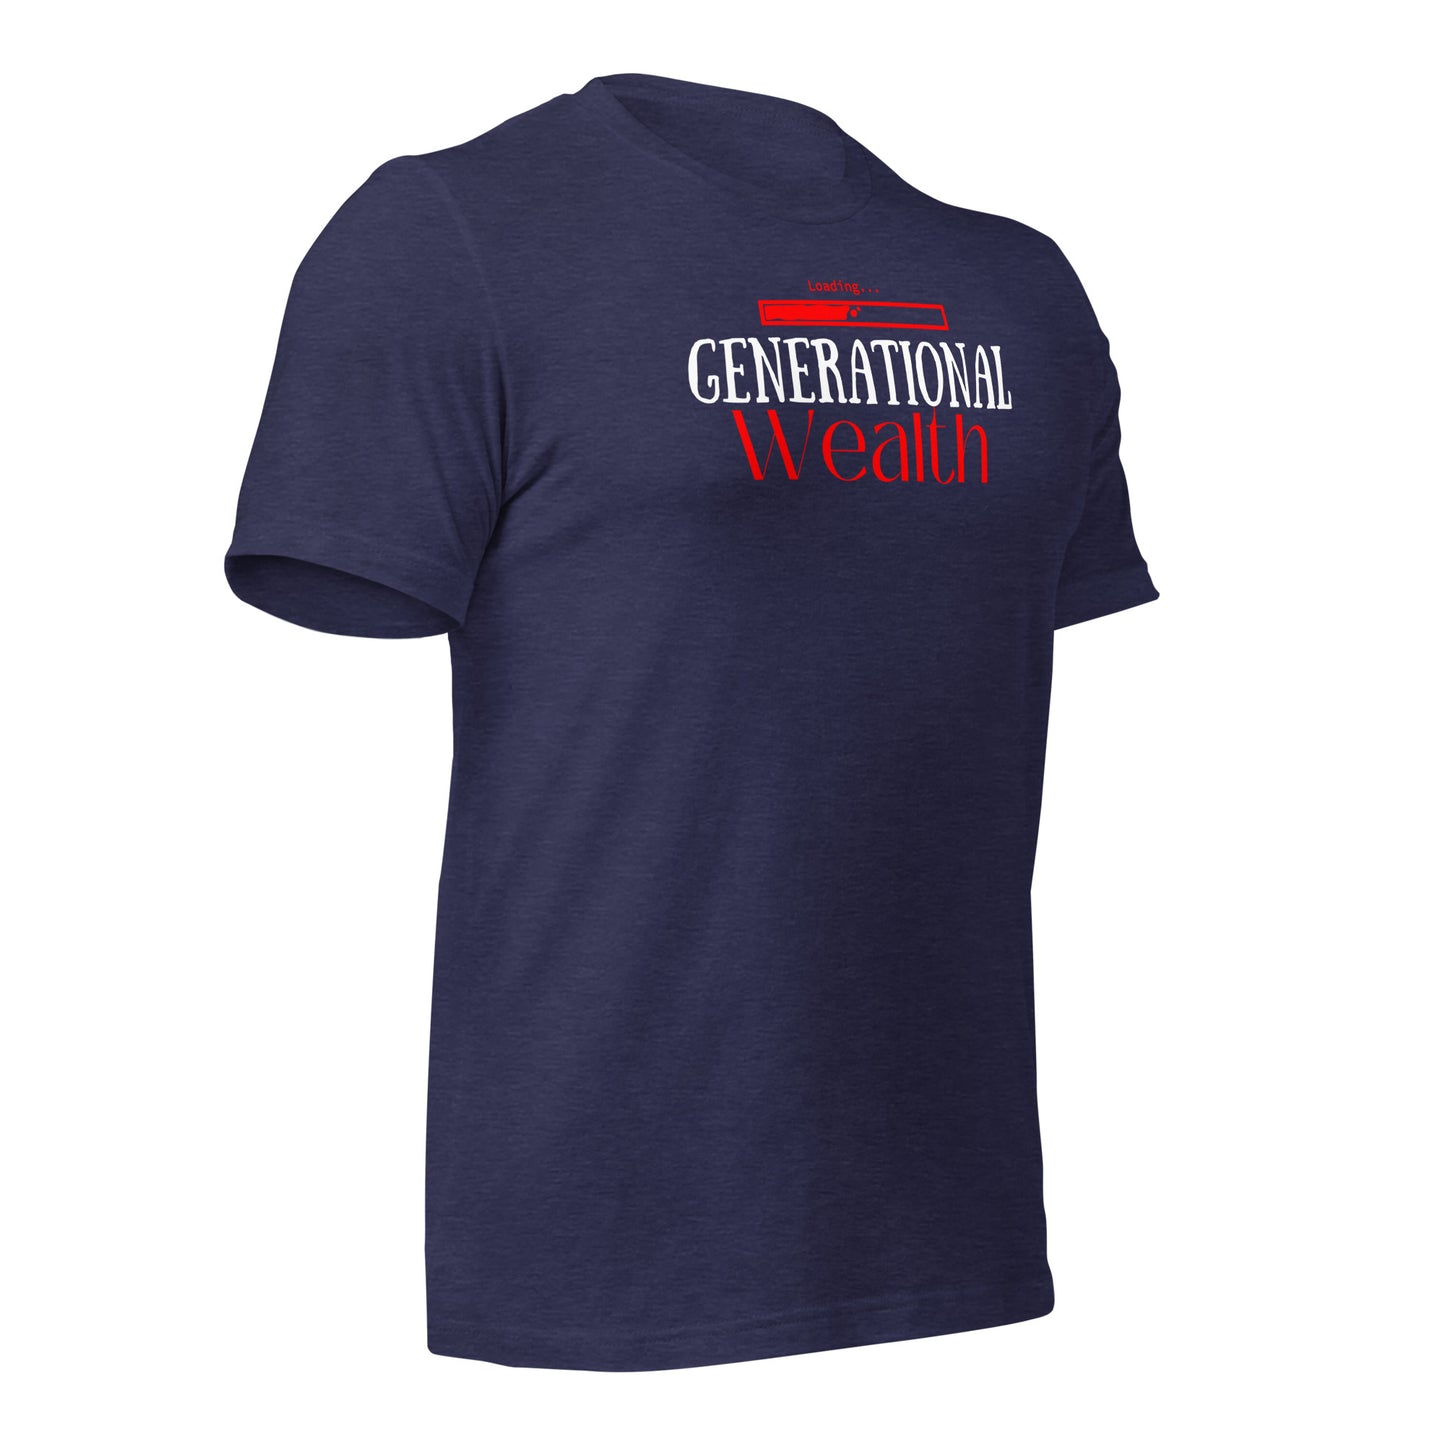 Generational Wealth Loading T-shirt for Entrepreneurs